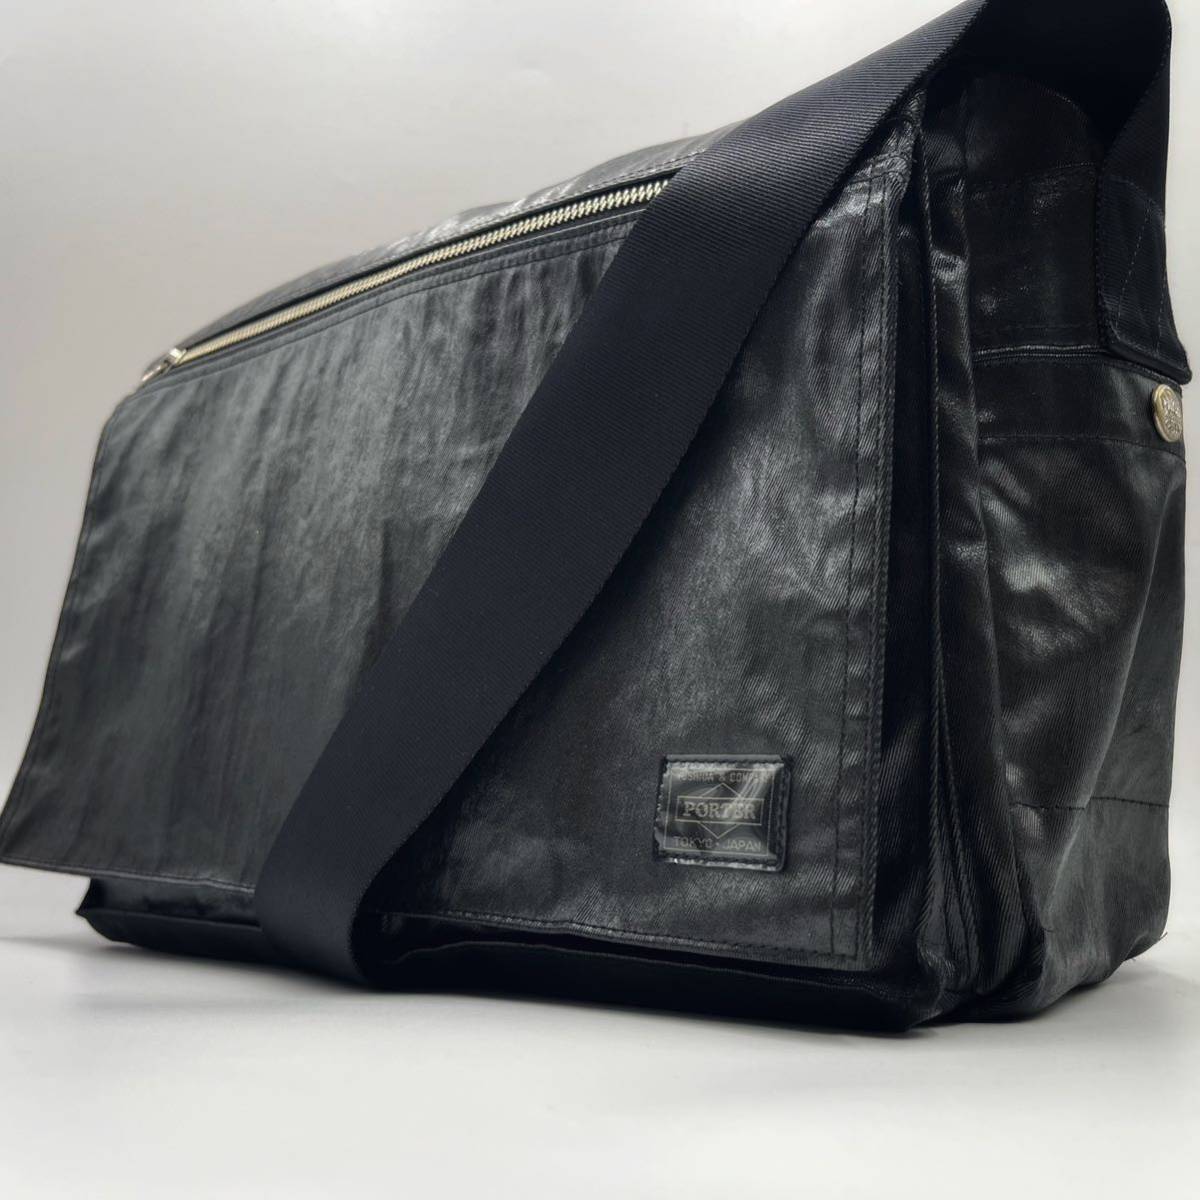 A4収納可能 PORTER ポーター 吉田カバン メンズ ショルダーバッグ 斜め掛け ビジネスバッグ PVC ブラック 黒 ポシェット フラップ  ダブル